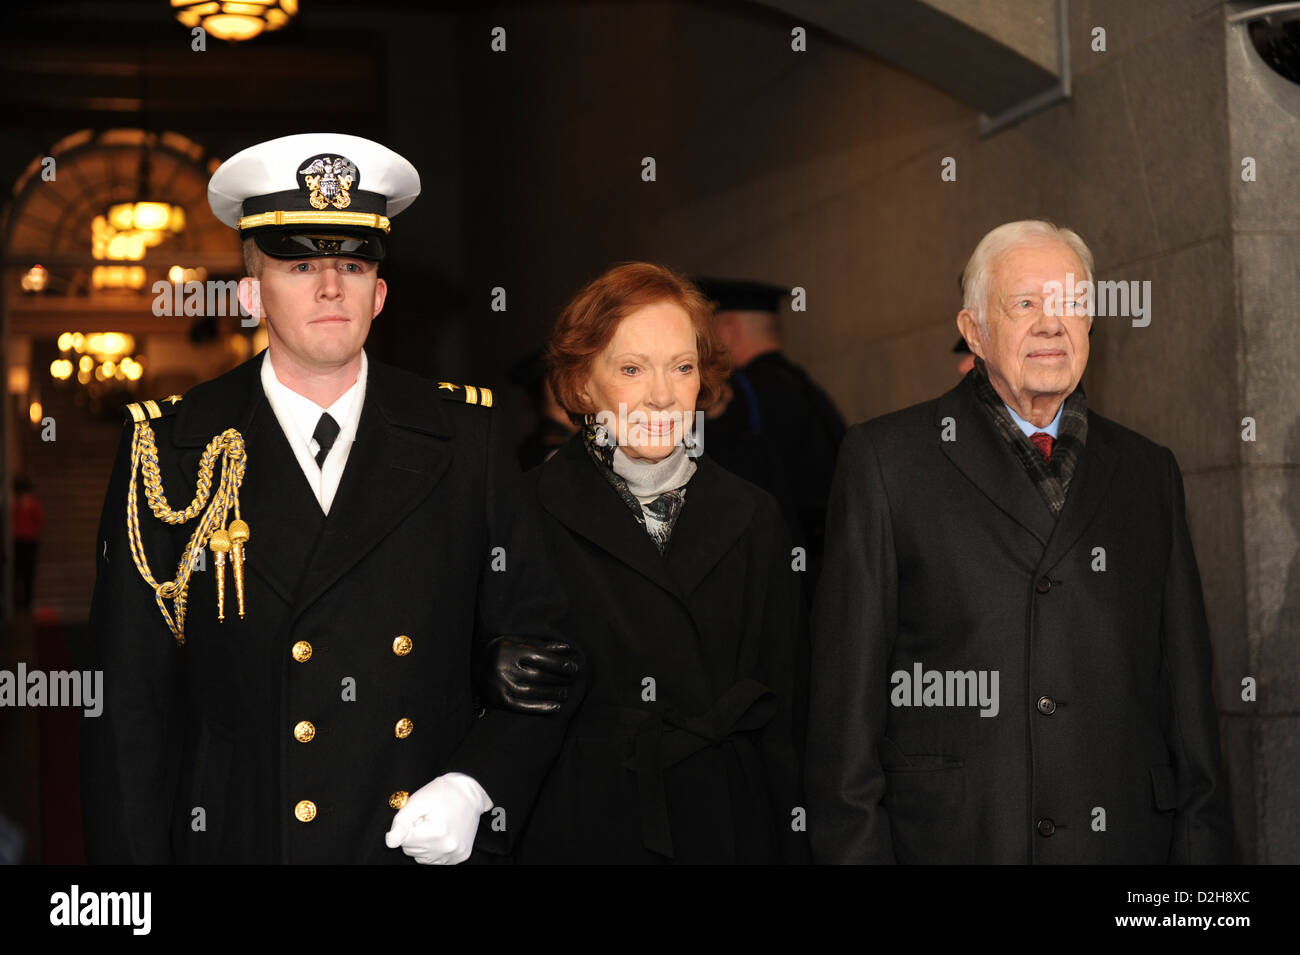 Ehemalige uns ehemaligen Präsidenten Jimmy Carter und seine Frau Rosalyn Carter werden in die Plattform für die Vereidigung bei der 57. Presidential Inauguration auf dem US Capitol 21. Januar 2013 in Washington, DC begleitet. Stockfoto